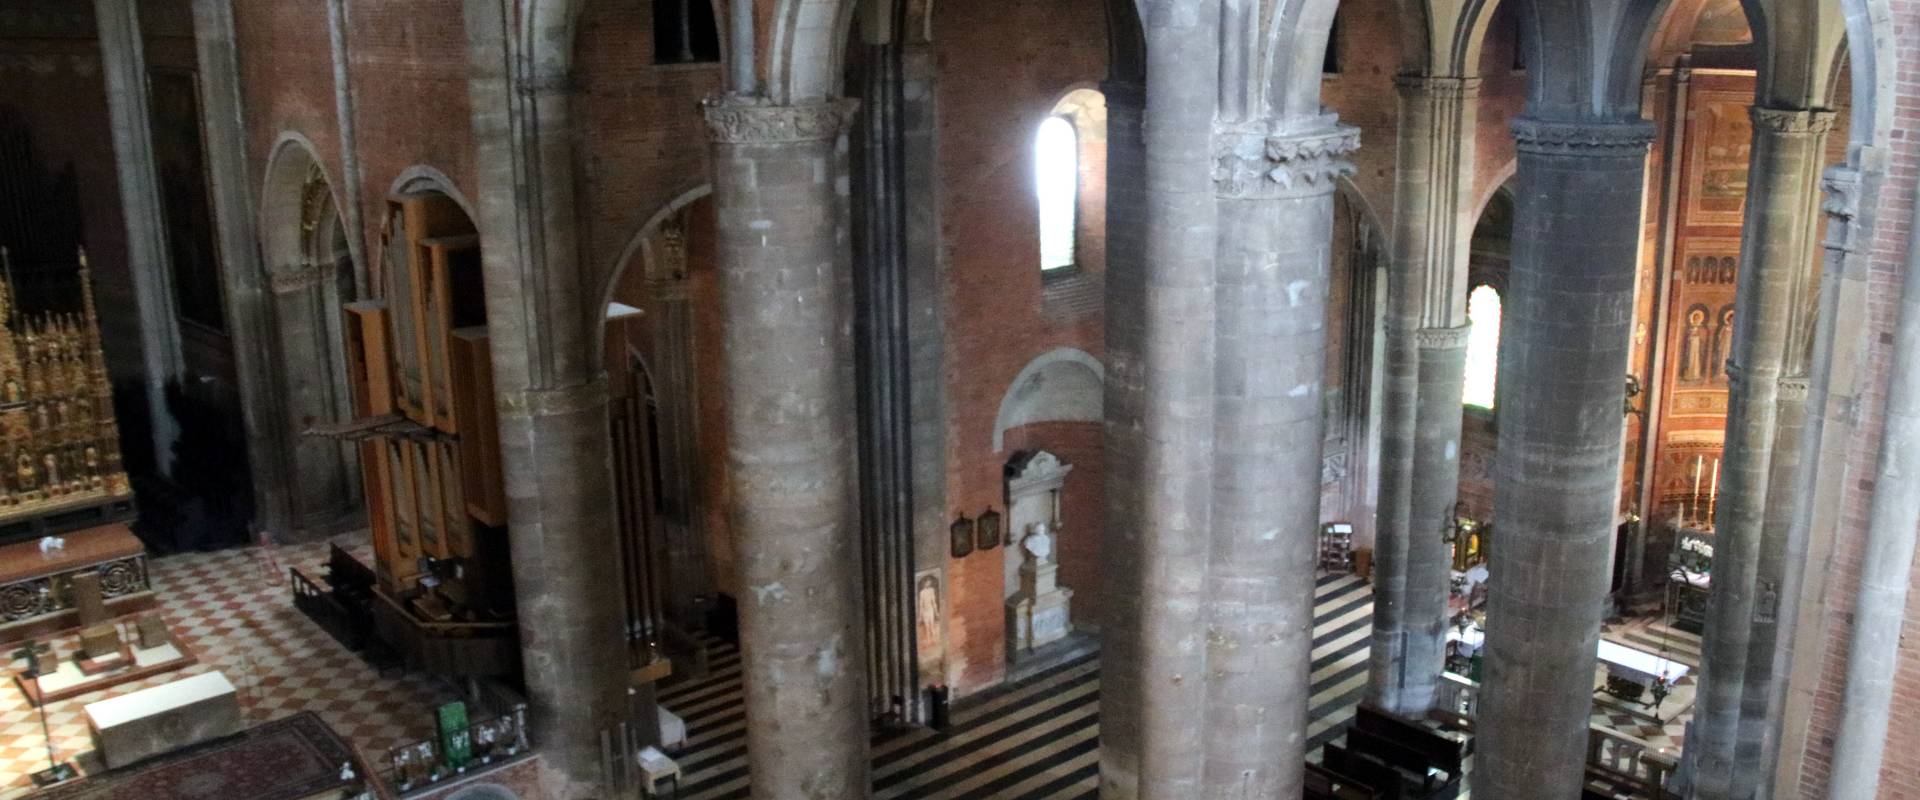 Duomo di Piacenza, interno 05 foto di Mongolo1984